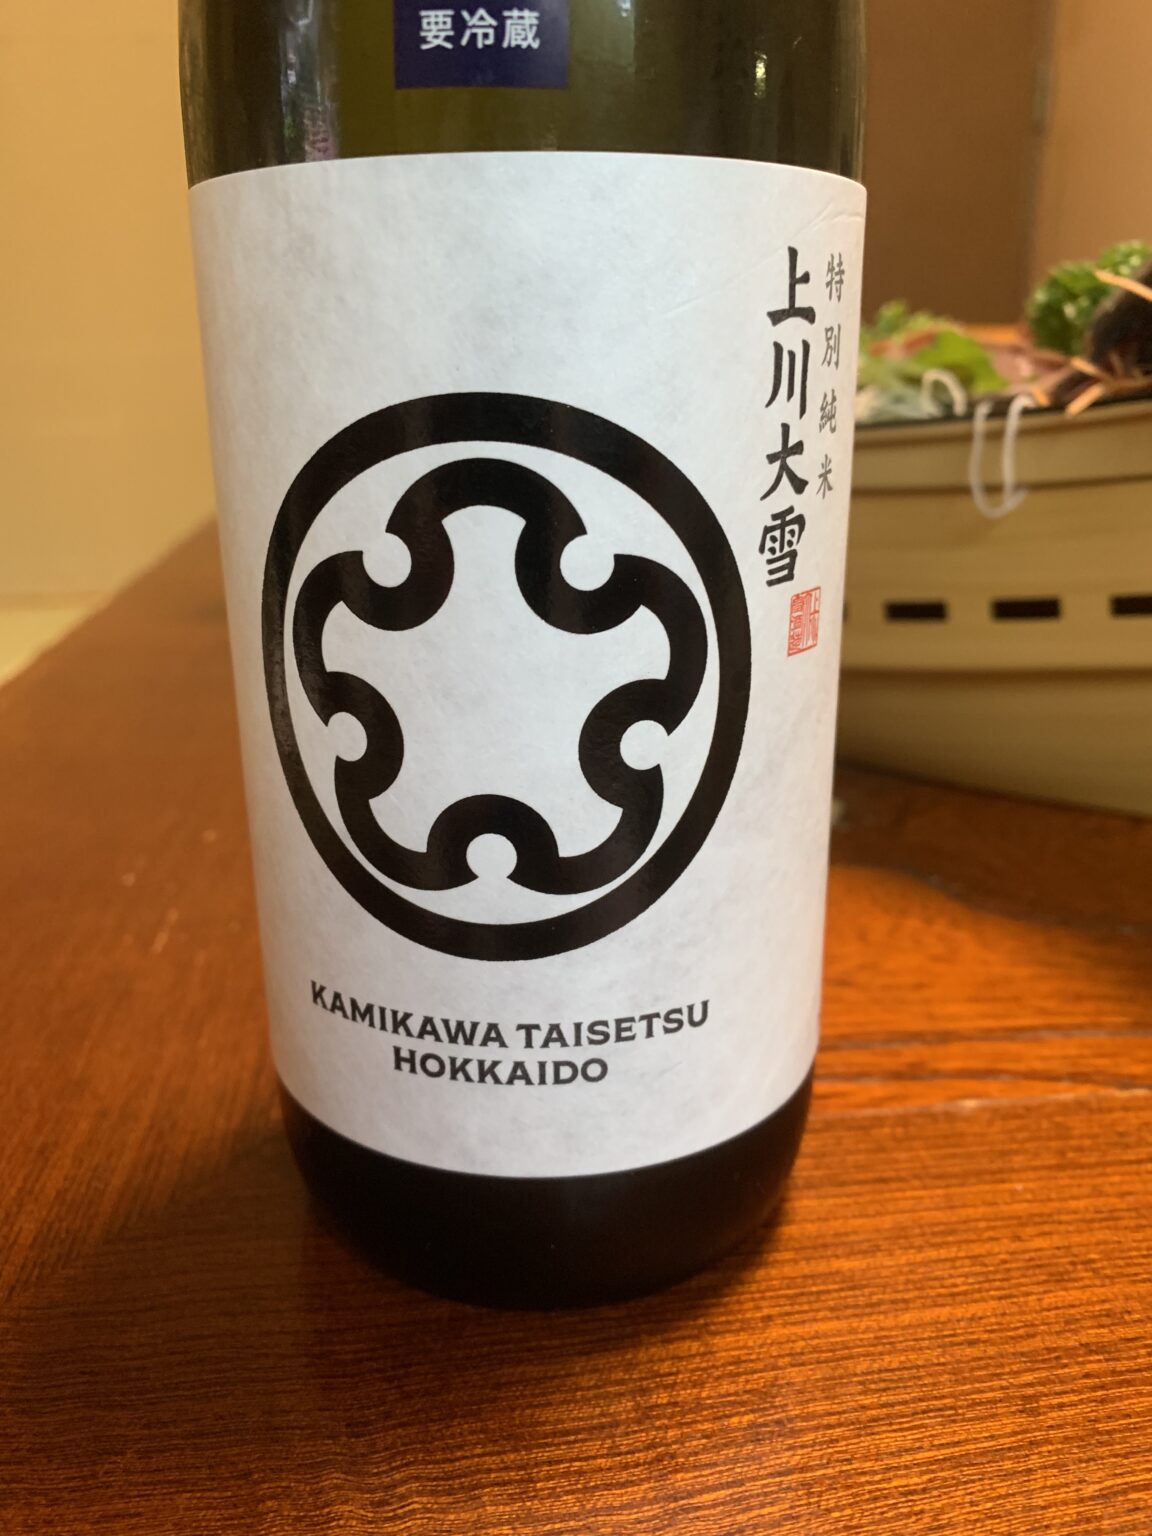 北海道の日本酒『上川大雪特別純米/吟風』は有機米特有の柔らかな旨味